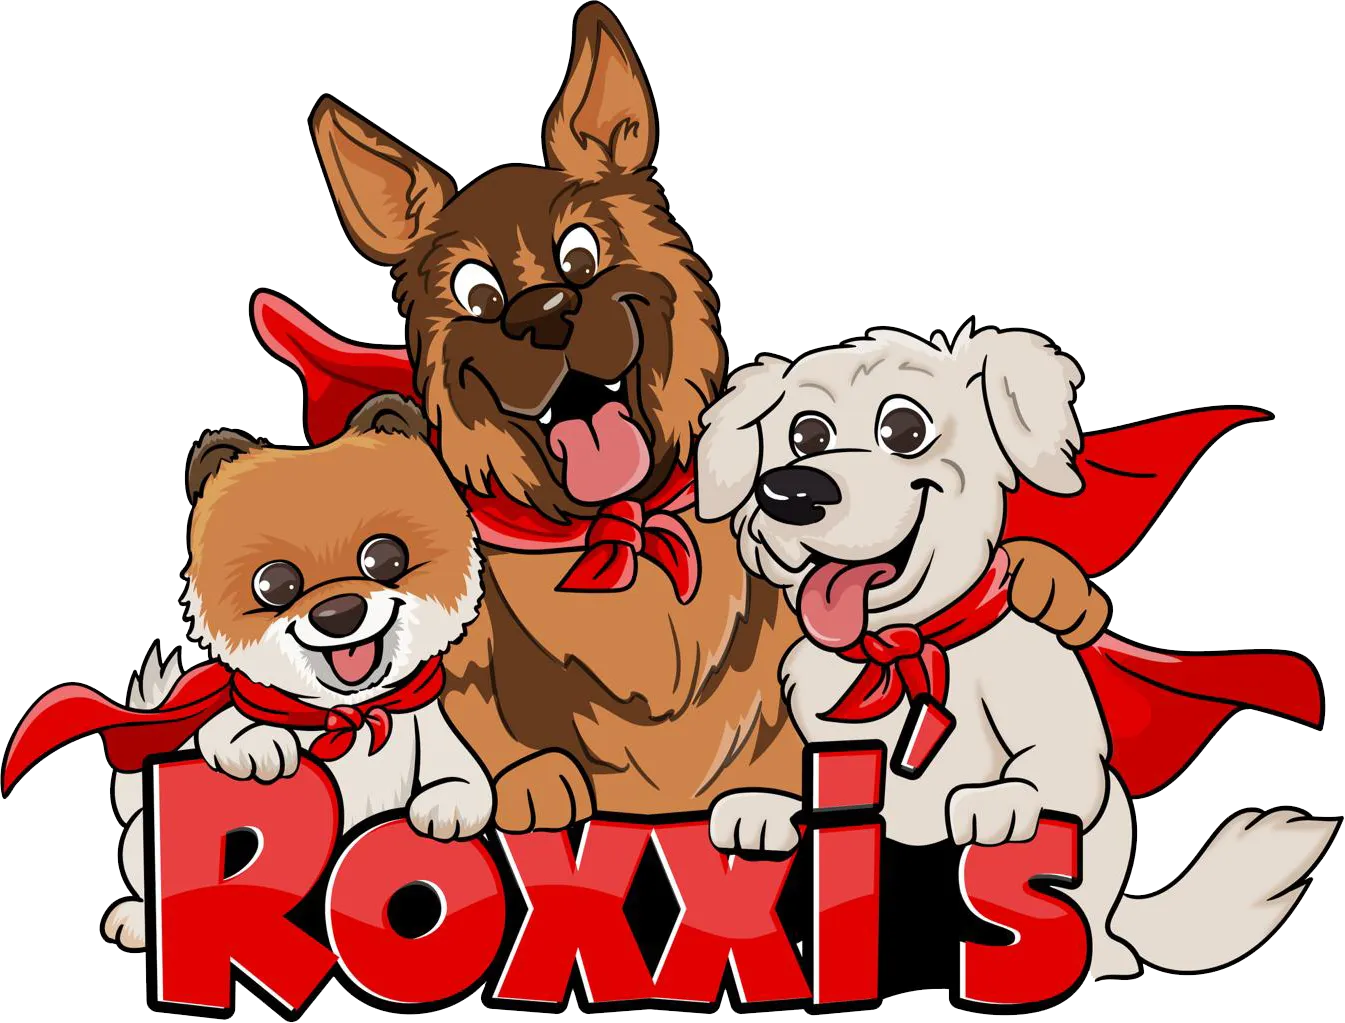 Roxxi’s Super Box